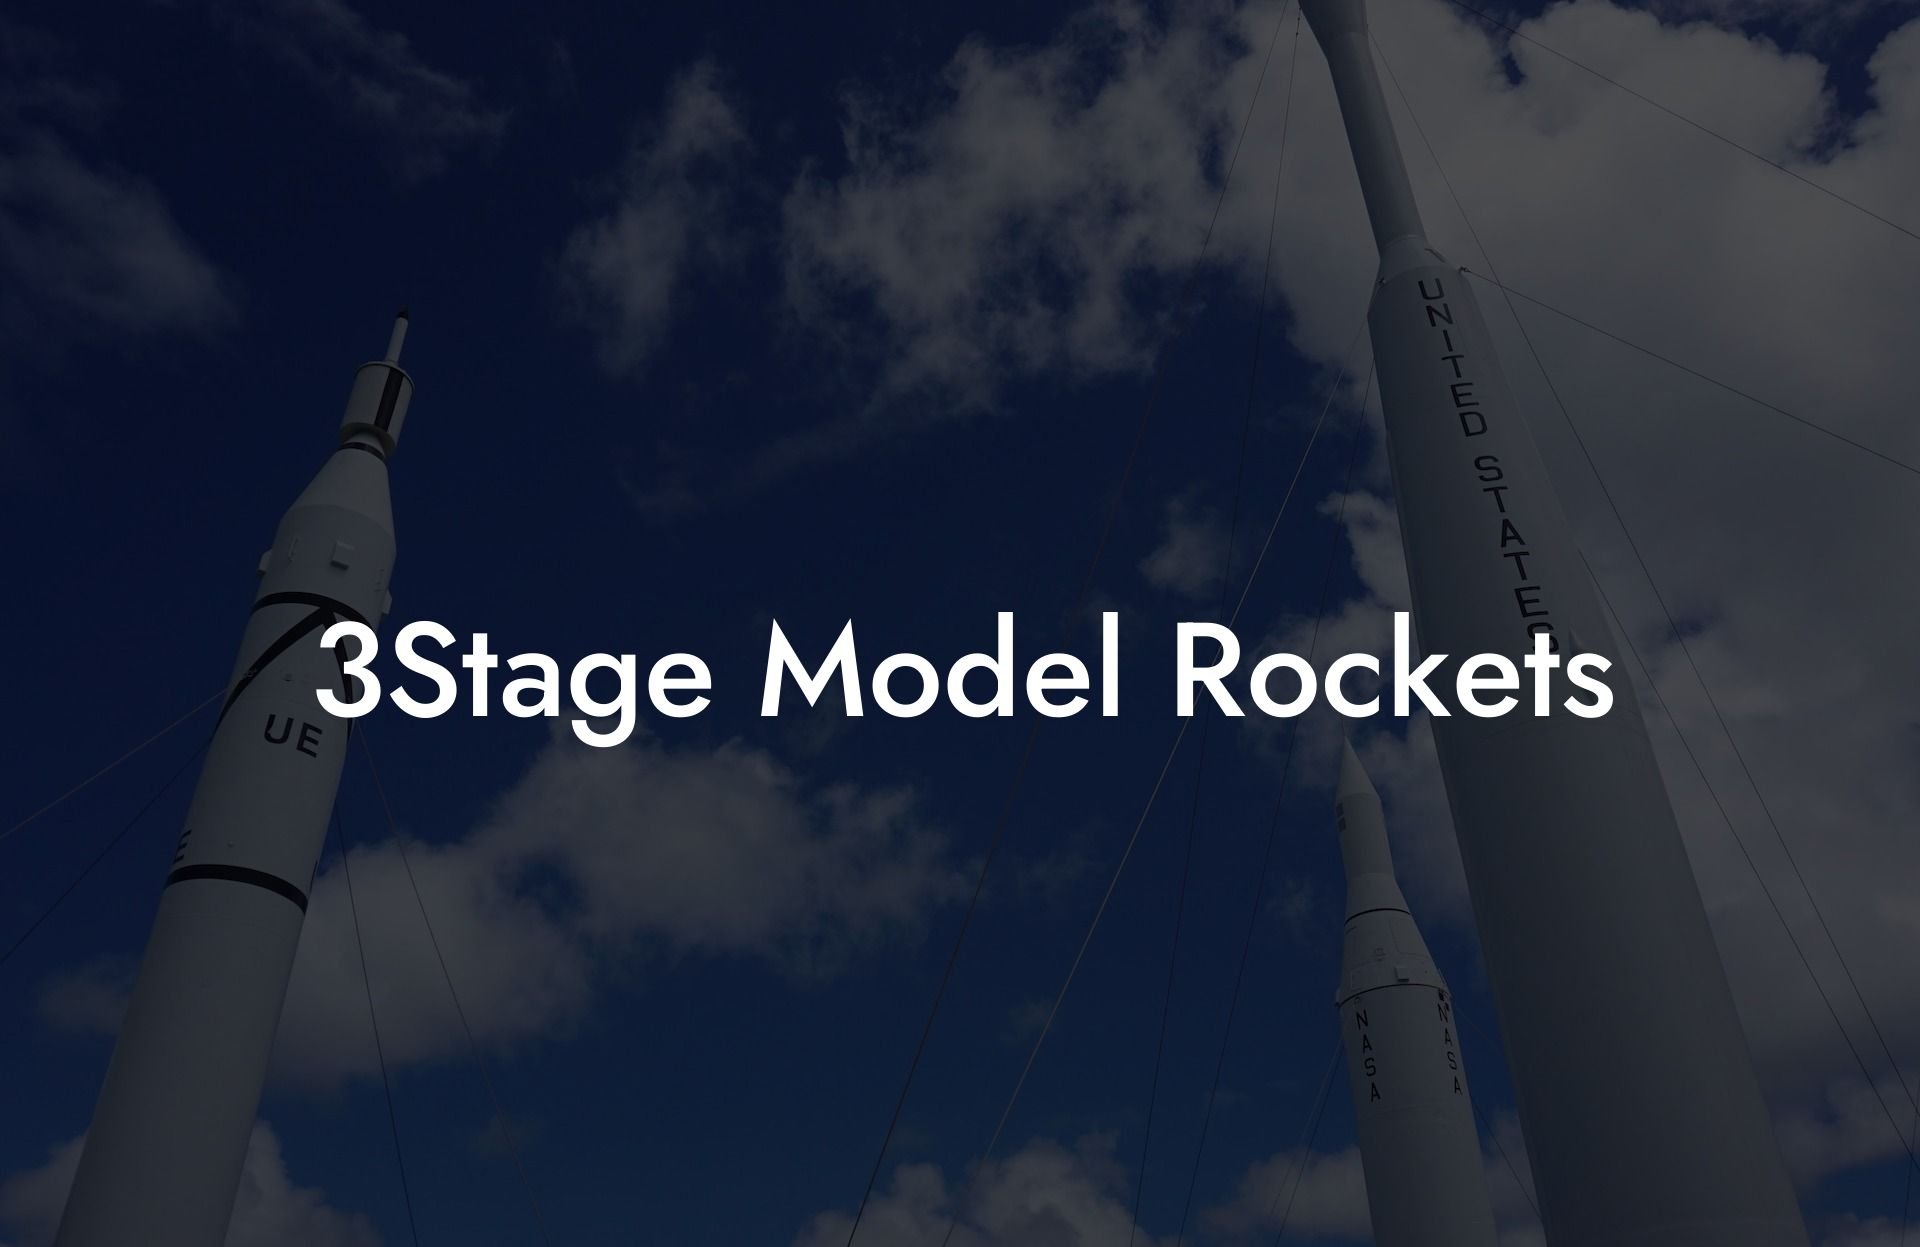 3Stage Model Rockets